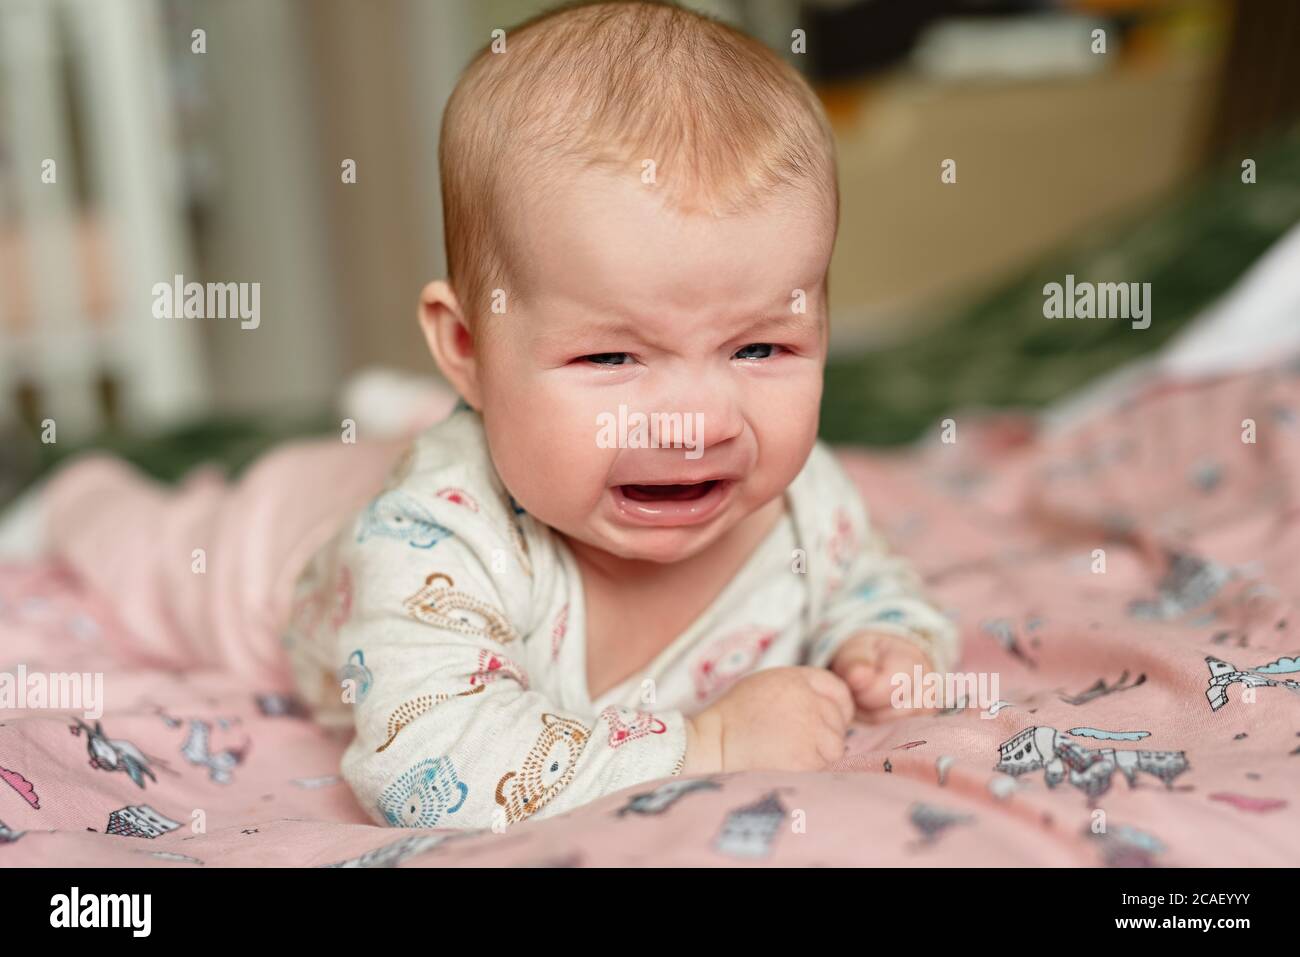 una niña de tres meses llorando, miente en su estómago y está muy disgustada, emociones tristes en el niño Foto de stock